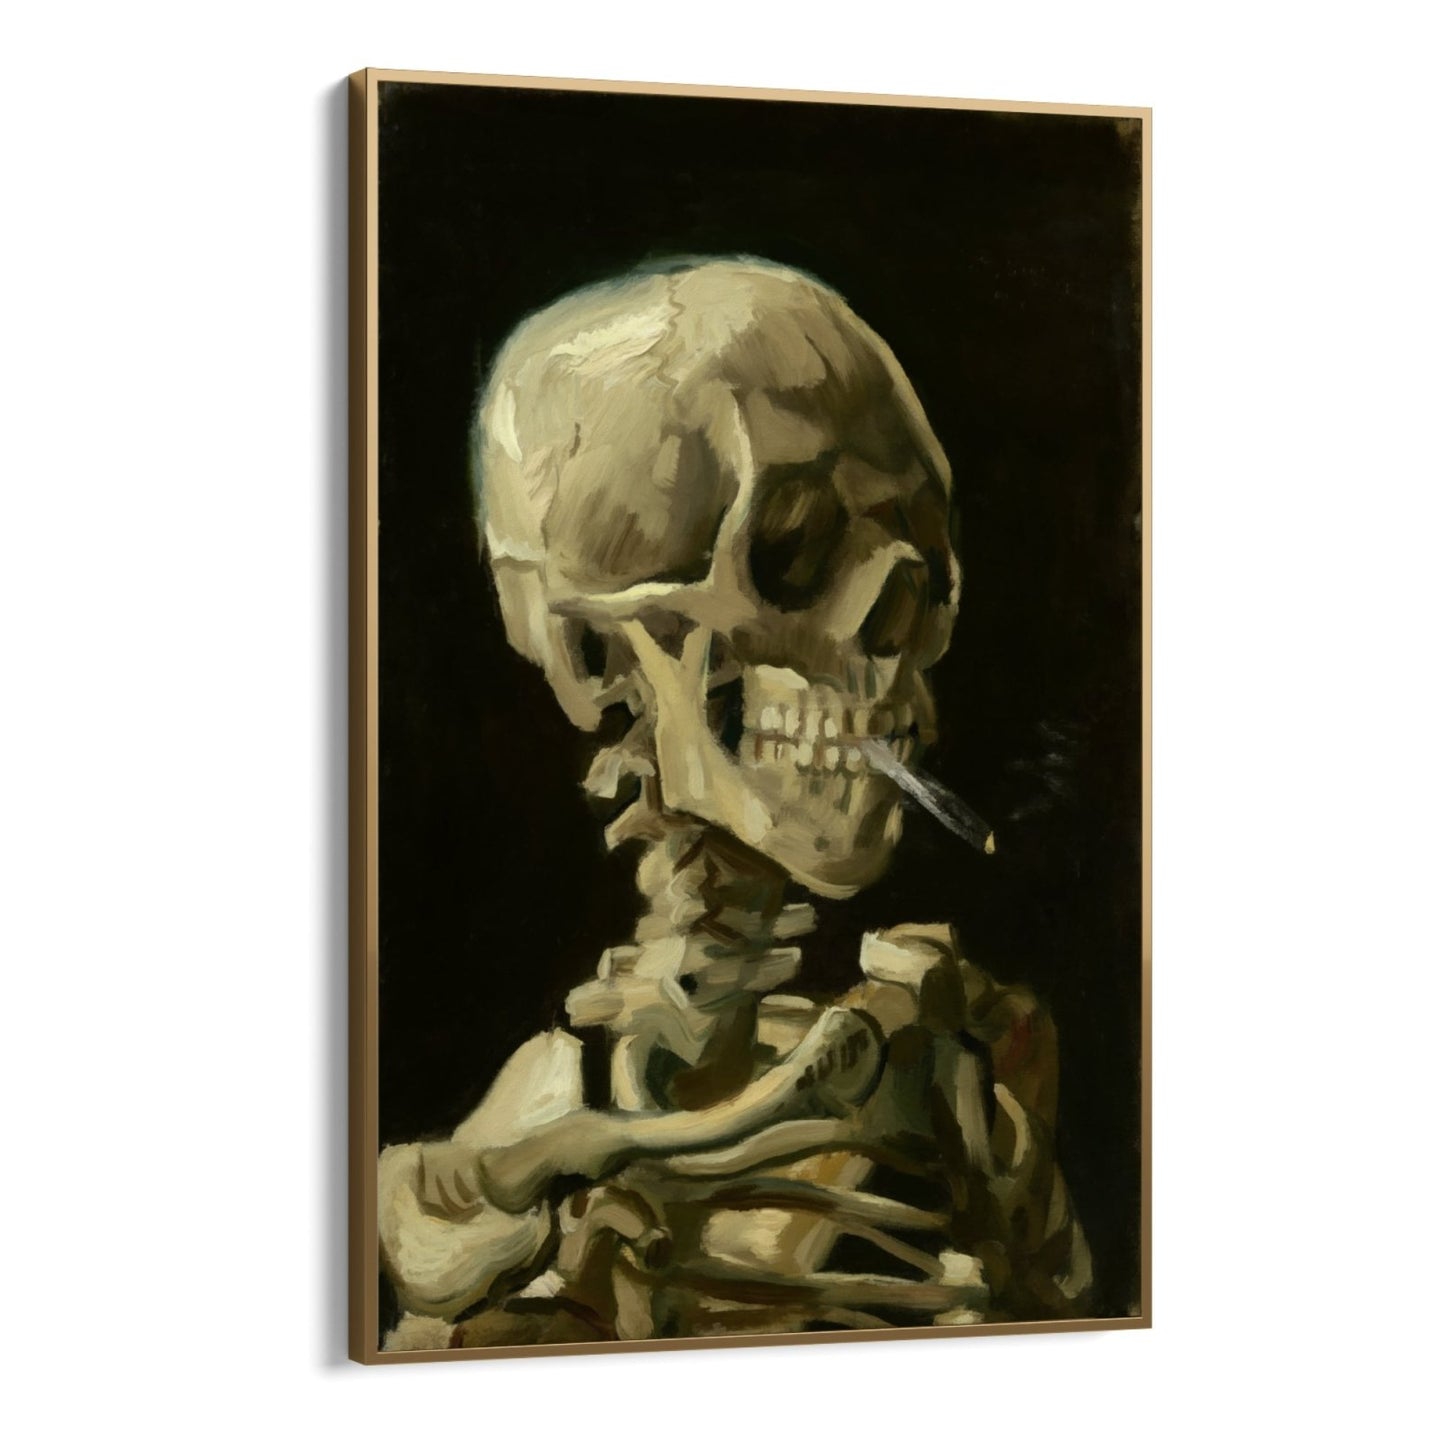 Skull with Cigarette, Vincent Van Gogh